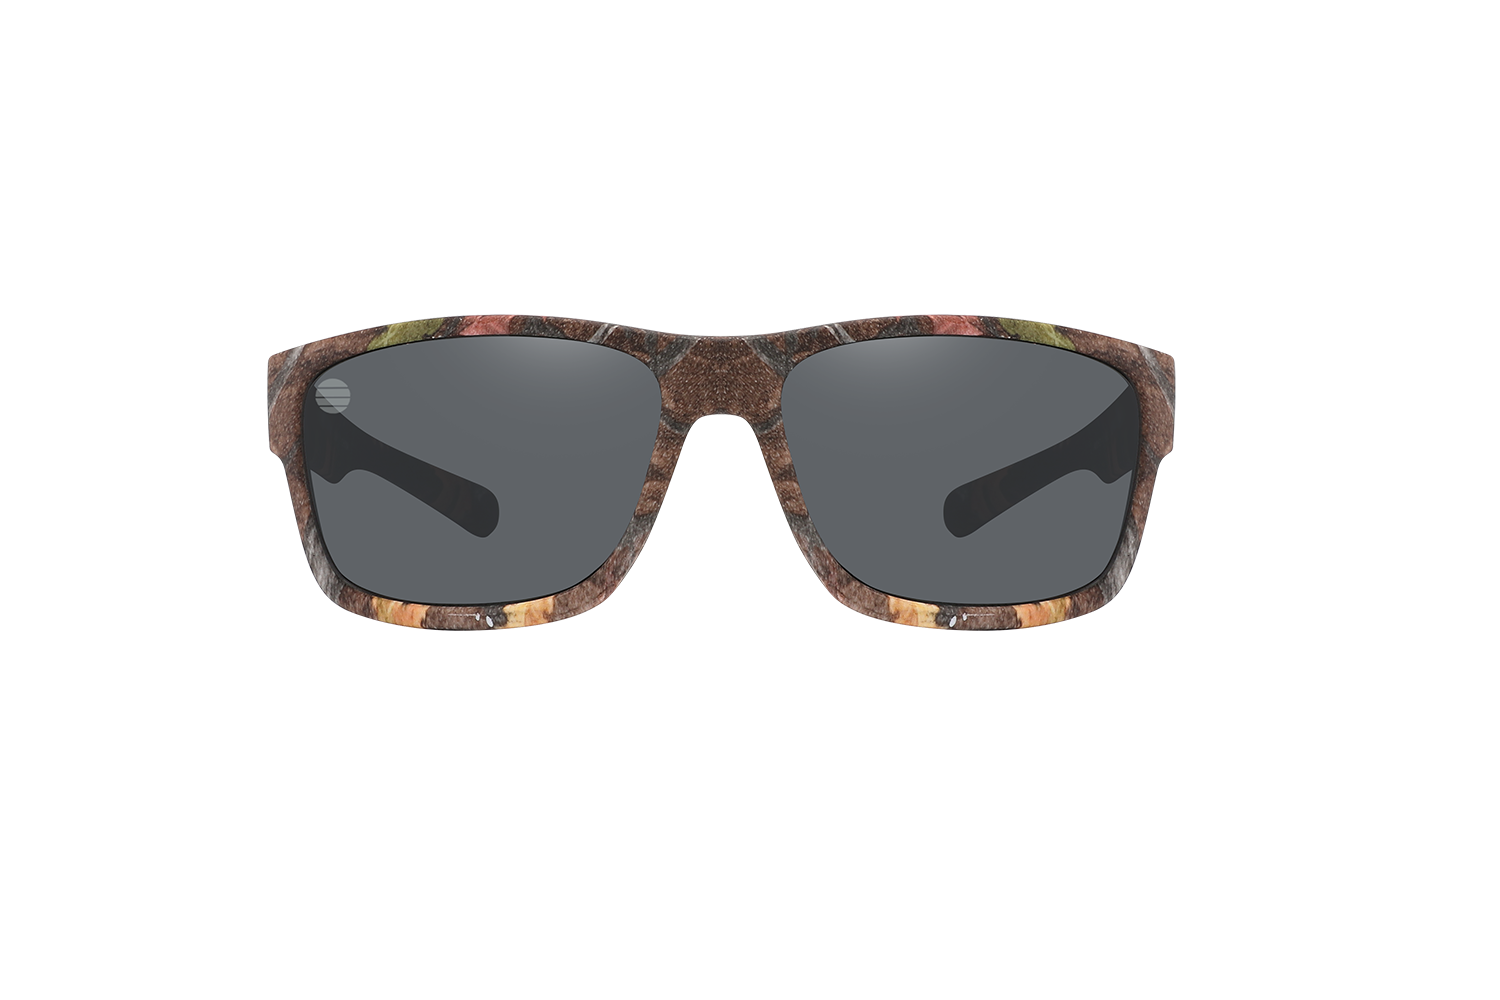 SolarX Camouflage – Sunglasses Eyewear